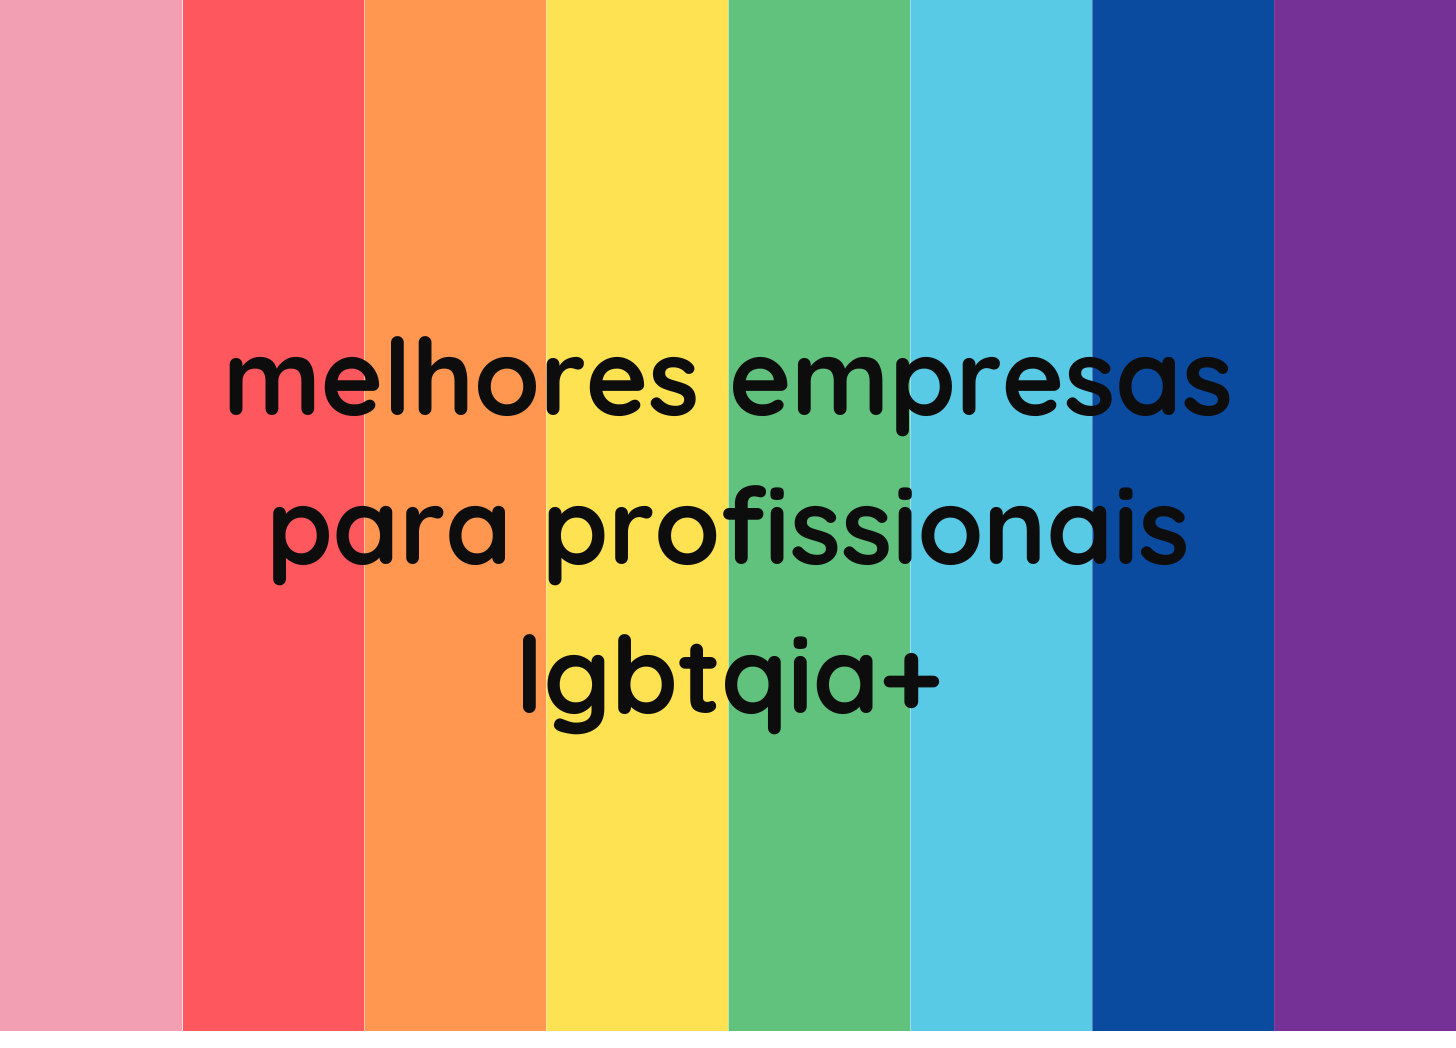 Fundo em faixas verticais nas cores do arcoíris com texto em letras pretas. “melhores empresas para profissionais lgbtqia+”.